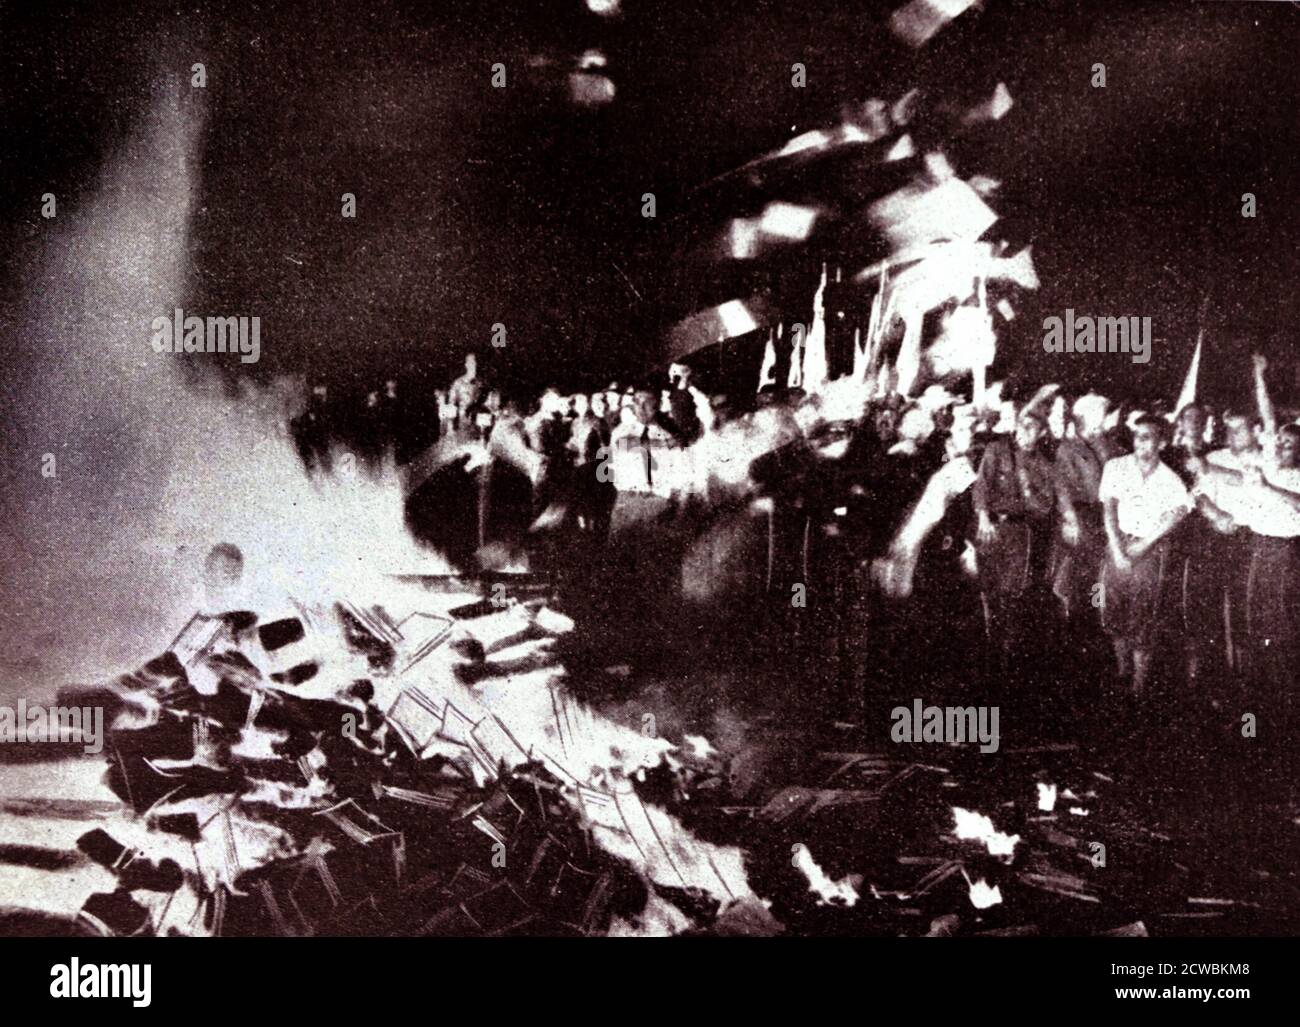 Foto in bianco e nero di un grande falò in cui una folla frenetica lancia milioni di volumi dalle biblioteche pubbliche che il regime di Hitler ha condannato come "non tedesco". Foto Stock